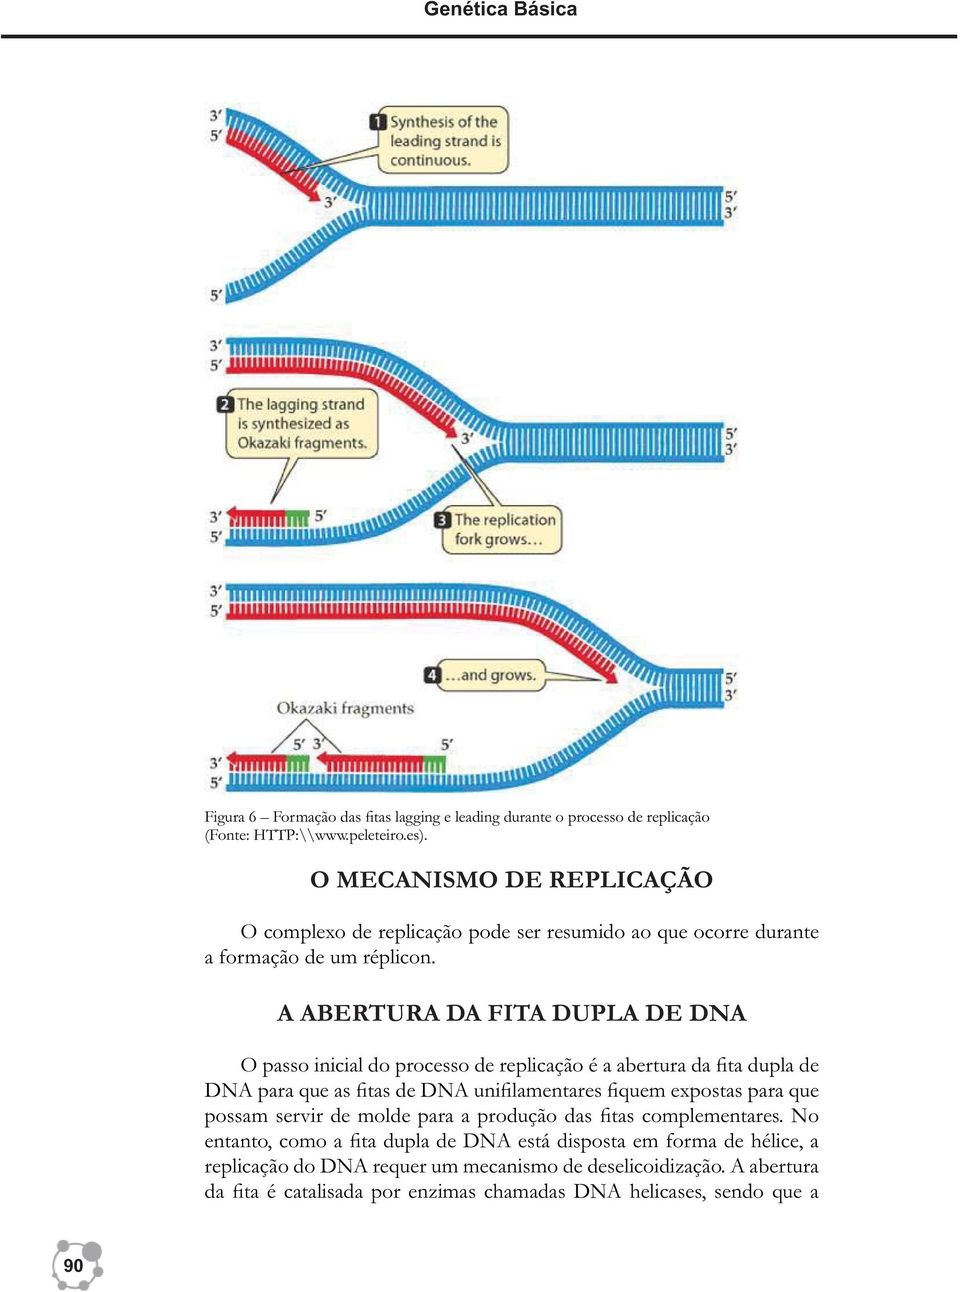 A ABERTURA DA FITA DUPLA DE DNA O passo inicial do processo de replicação é a abertura da fita dupla de DNA para que as fitas de DNA unifilamentares fiquem expostas para que